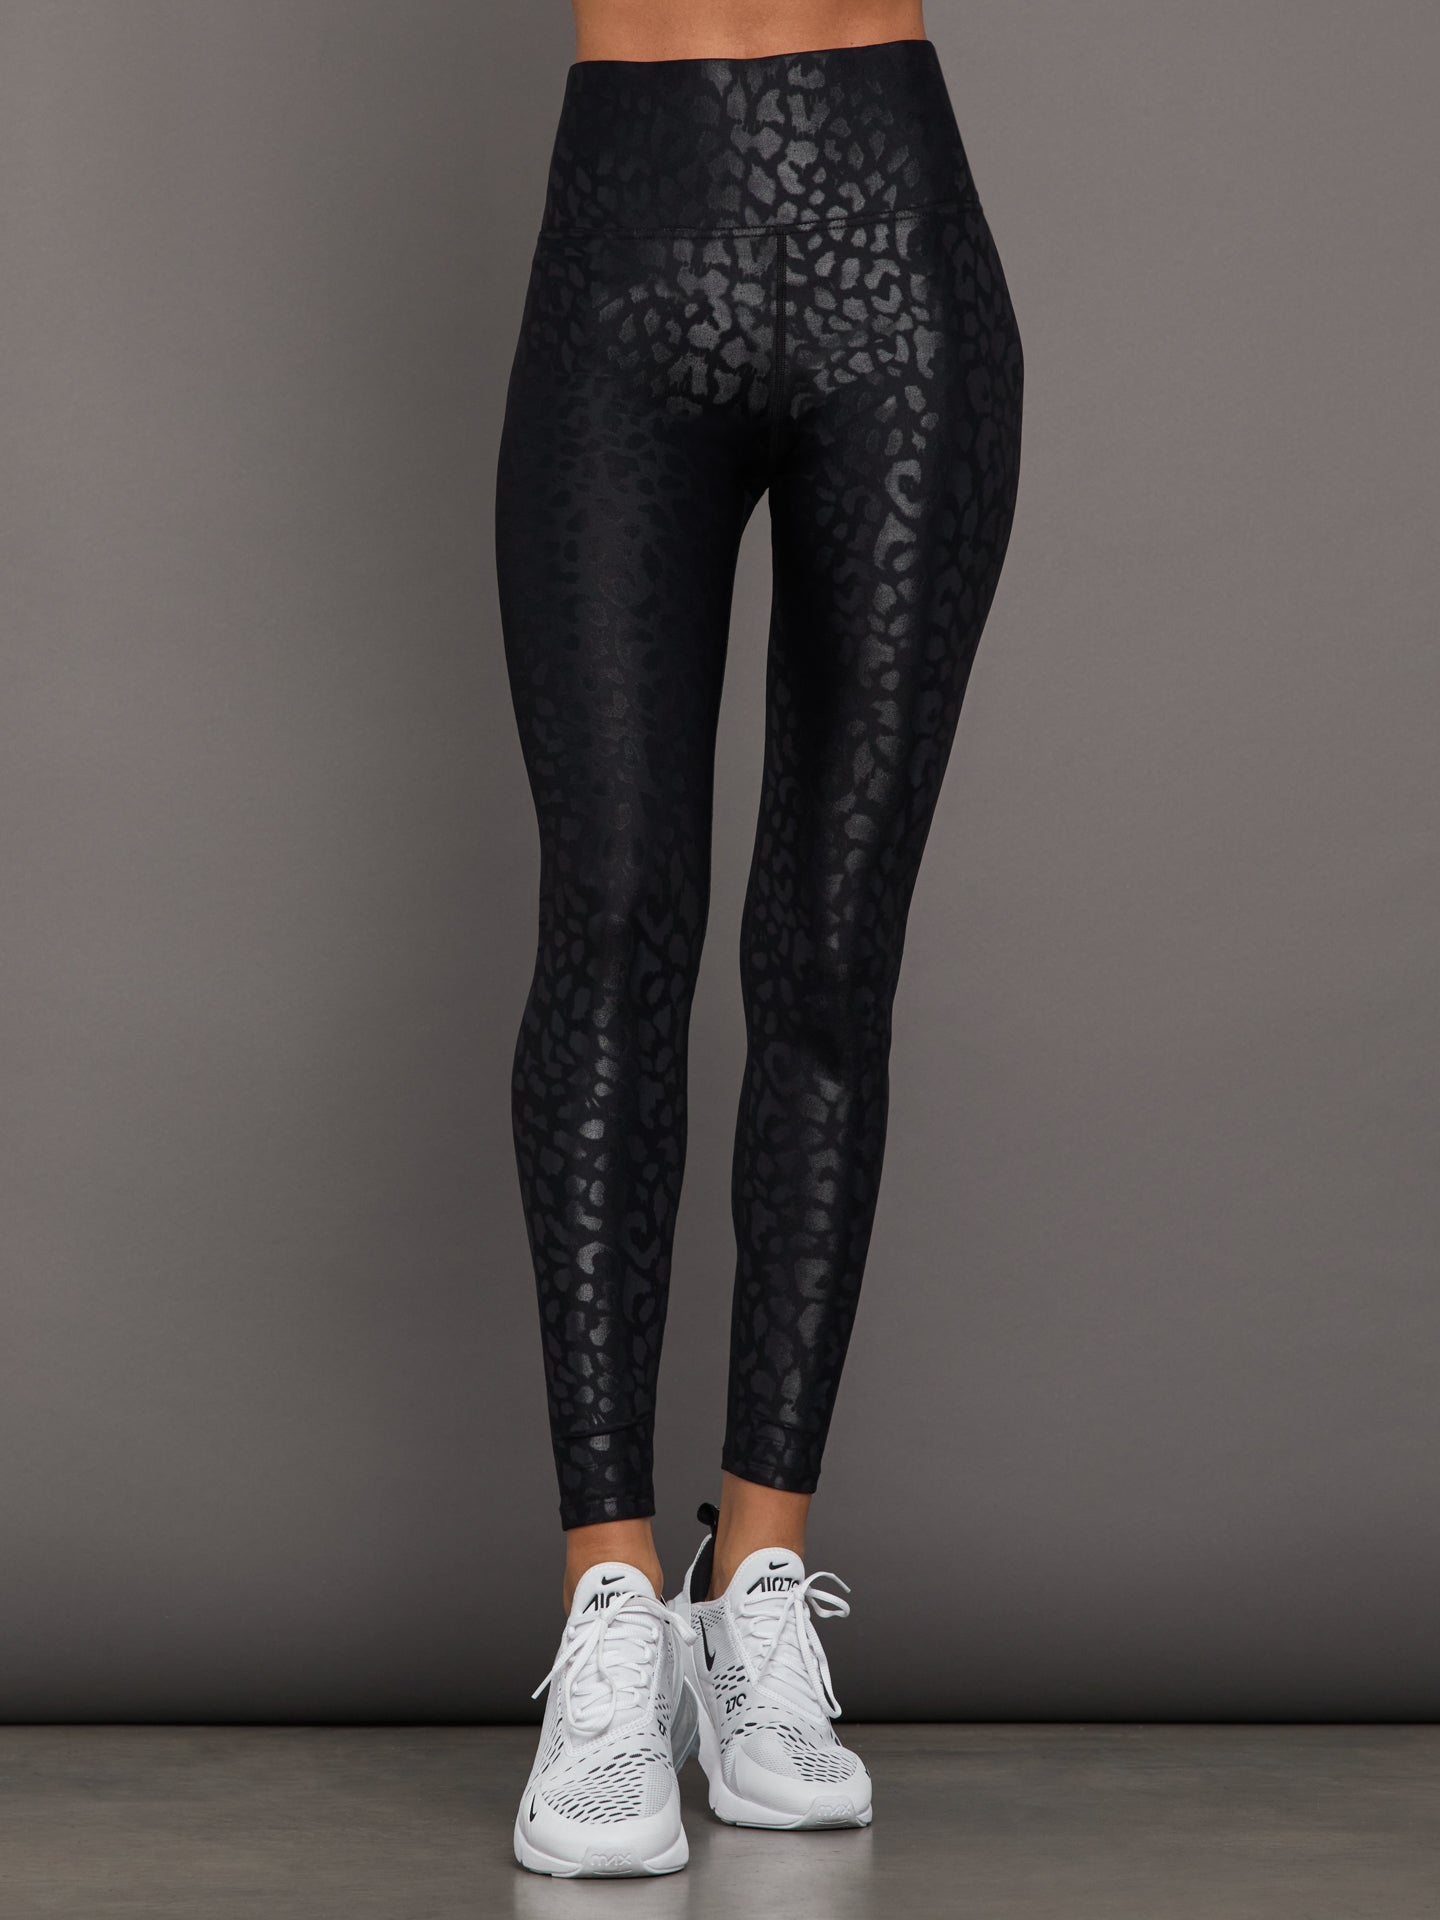 Black Snakeskin Print Capri Leggings, Designer Python Snake Skin Women's  Capris Tights-Made in USA/EU | Heidikimurart Limited